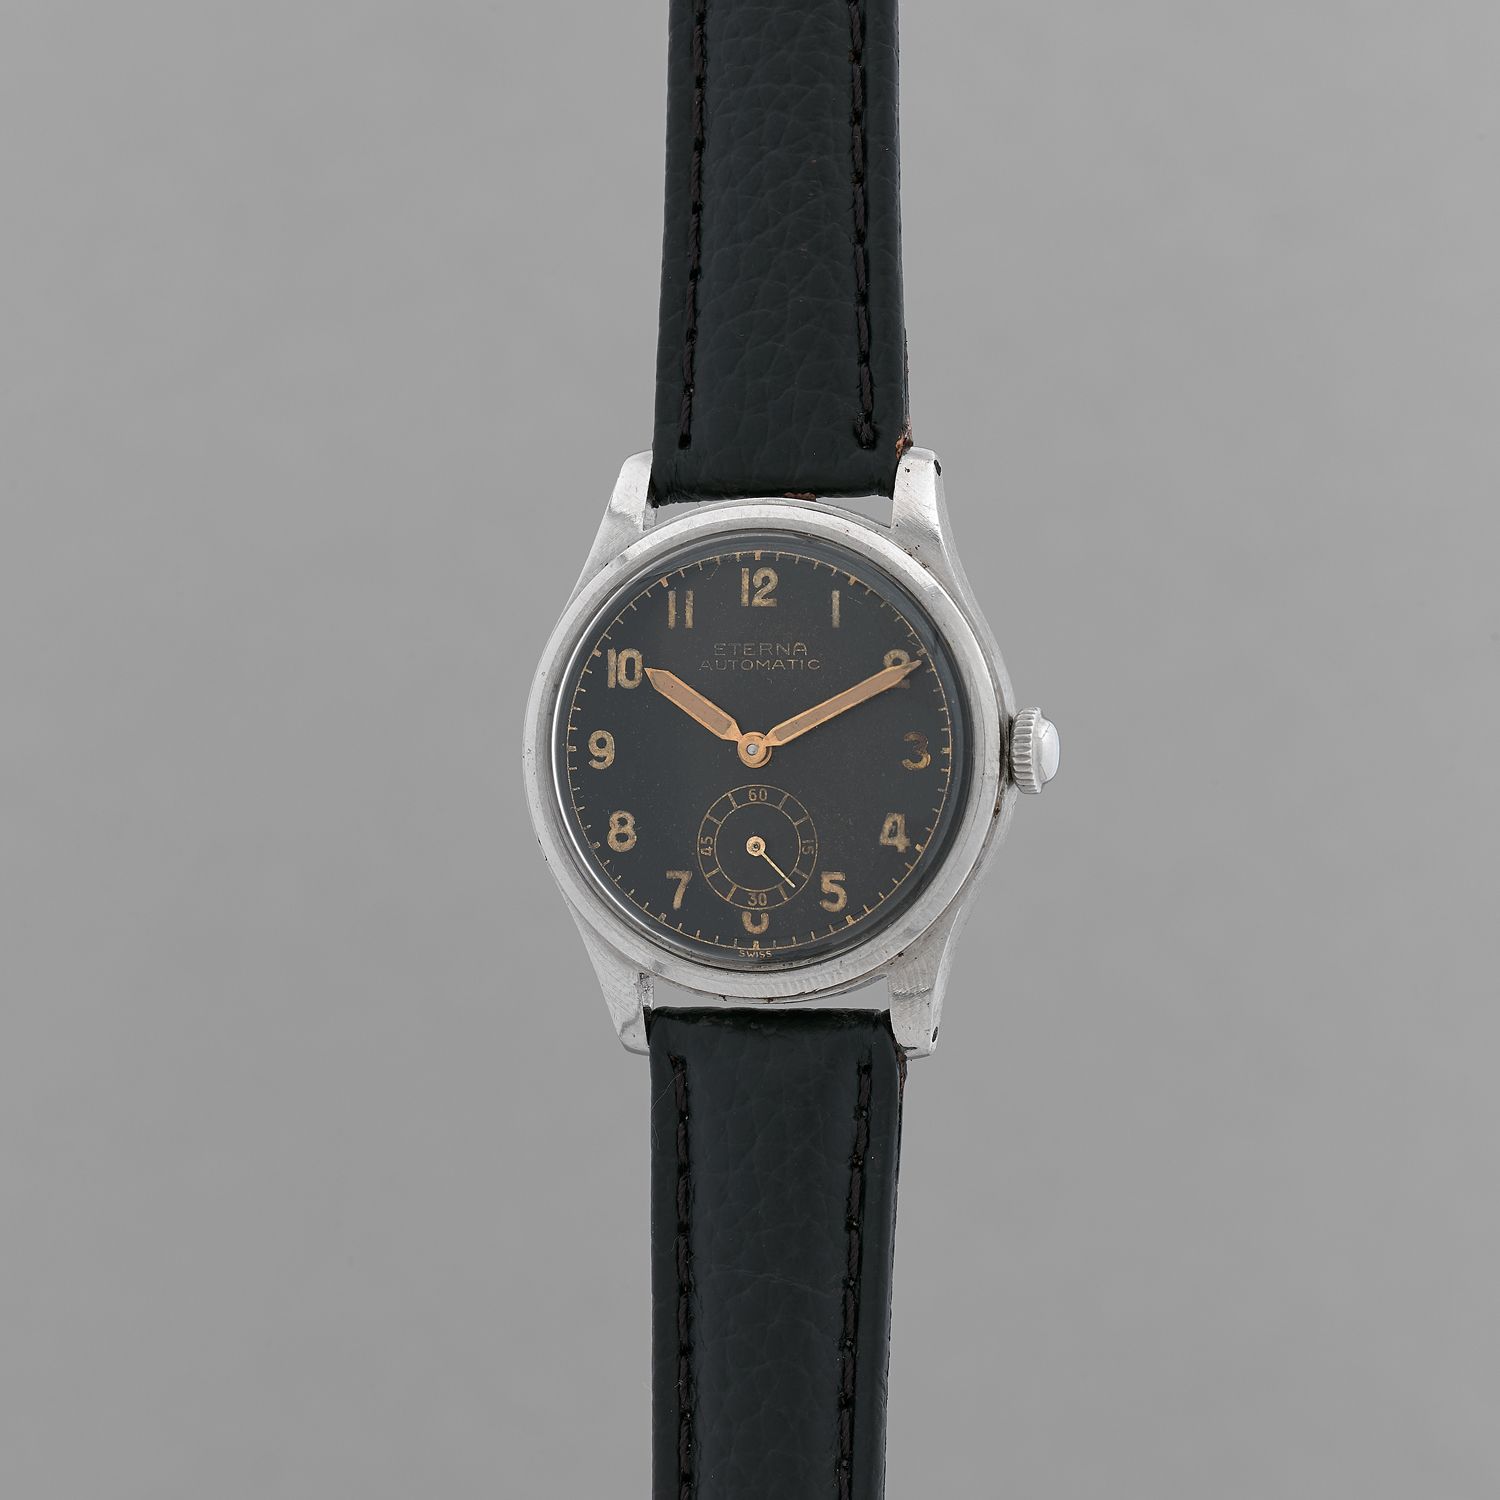 Null ETERNA
Tipo militar.
Alrededor de 1940.
Reloj de pulsera de acero. Caja red&hellip;